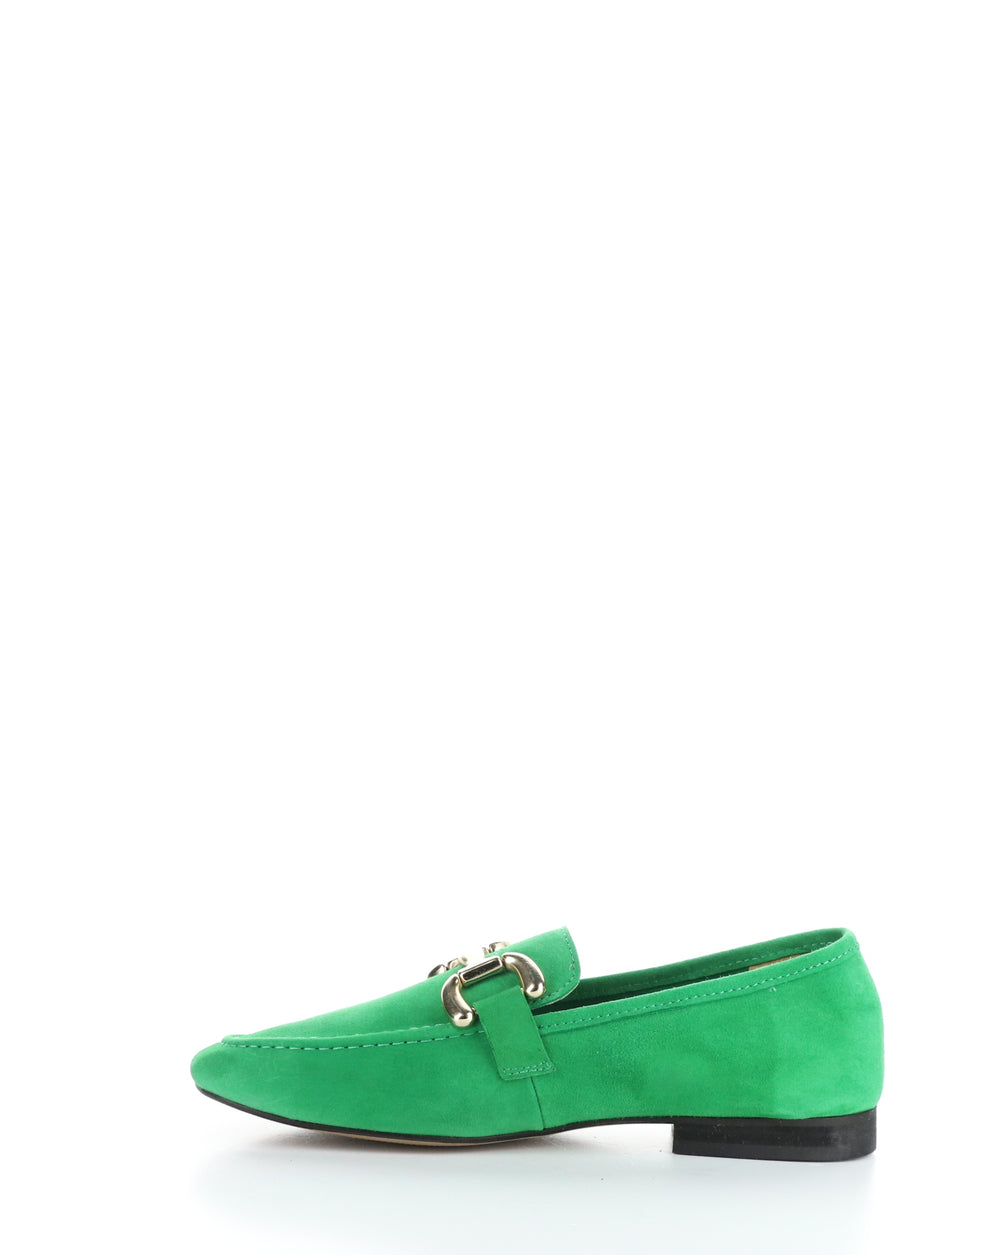 MACIE IRISH GREEN Slip-on Shoes